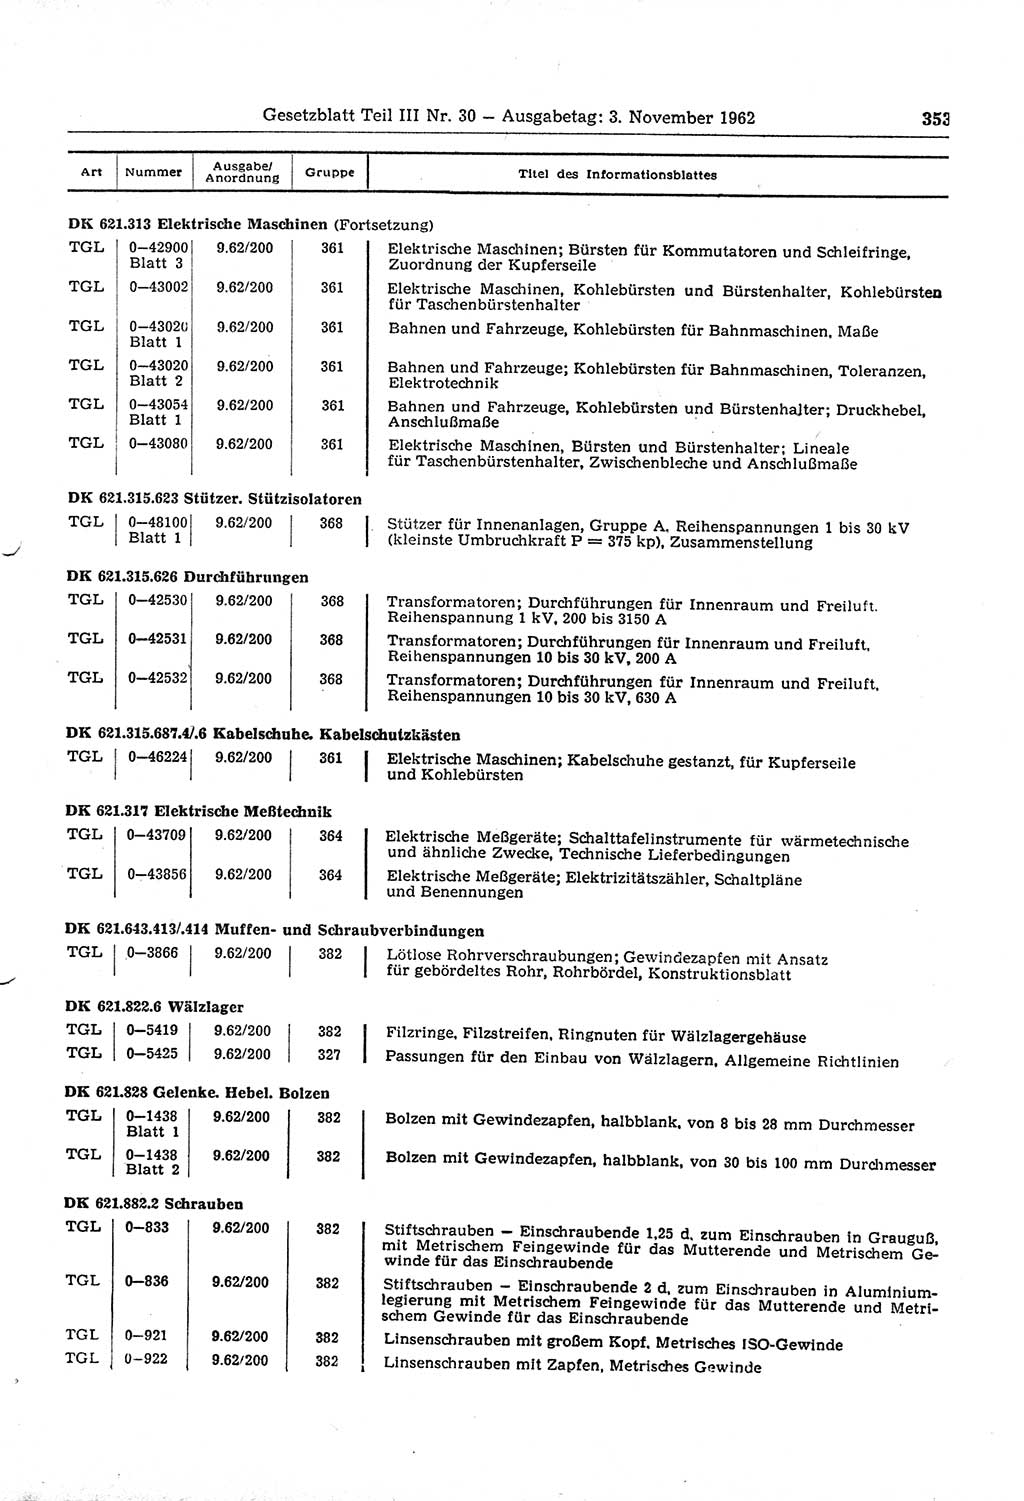 Gesetzblatt (GBl.) der Deutschen Demokratischen Republik (DDR) Teil ⅠⅠⅠ 1962, Seite 353 (GBl. DDR ⅠⅠⅠ 1962, S. 353)